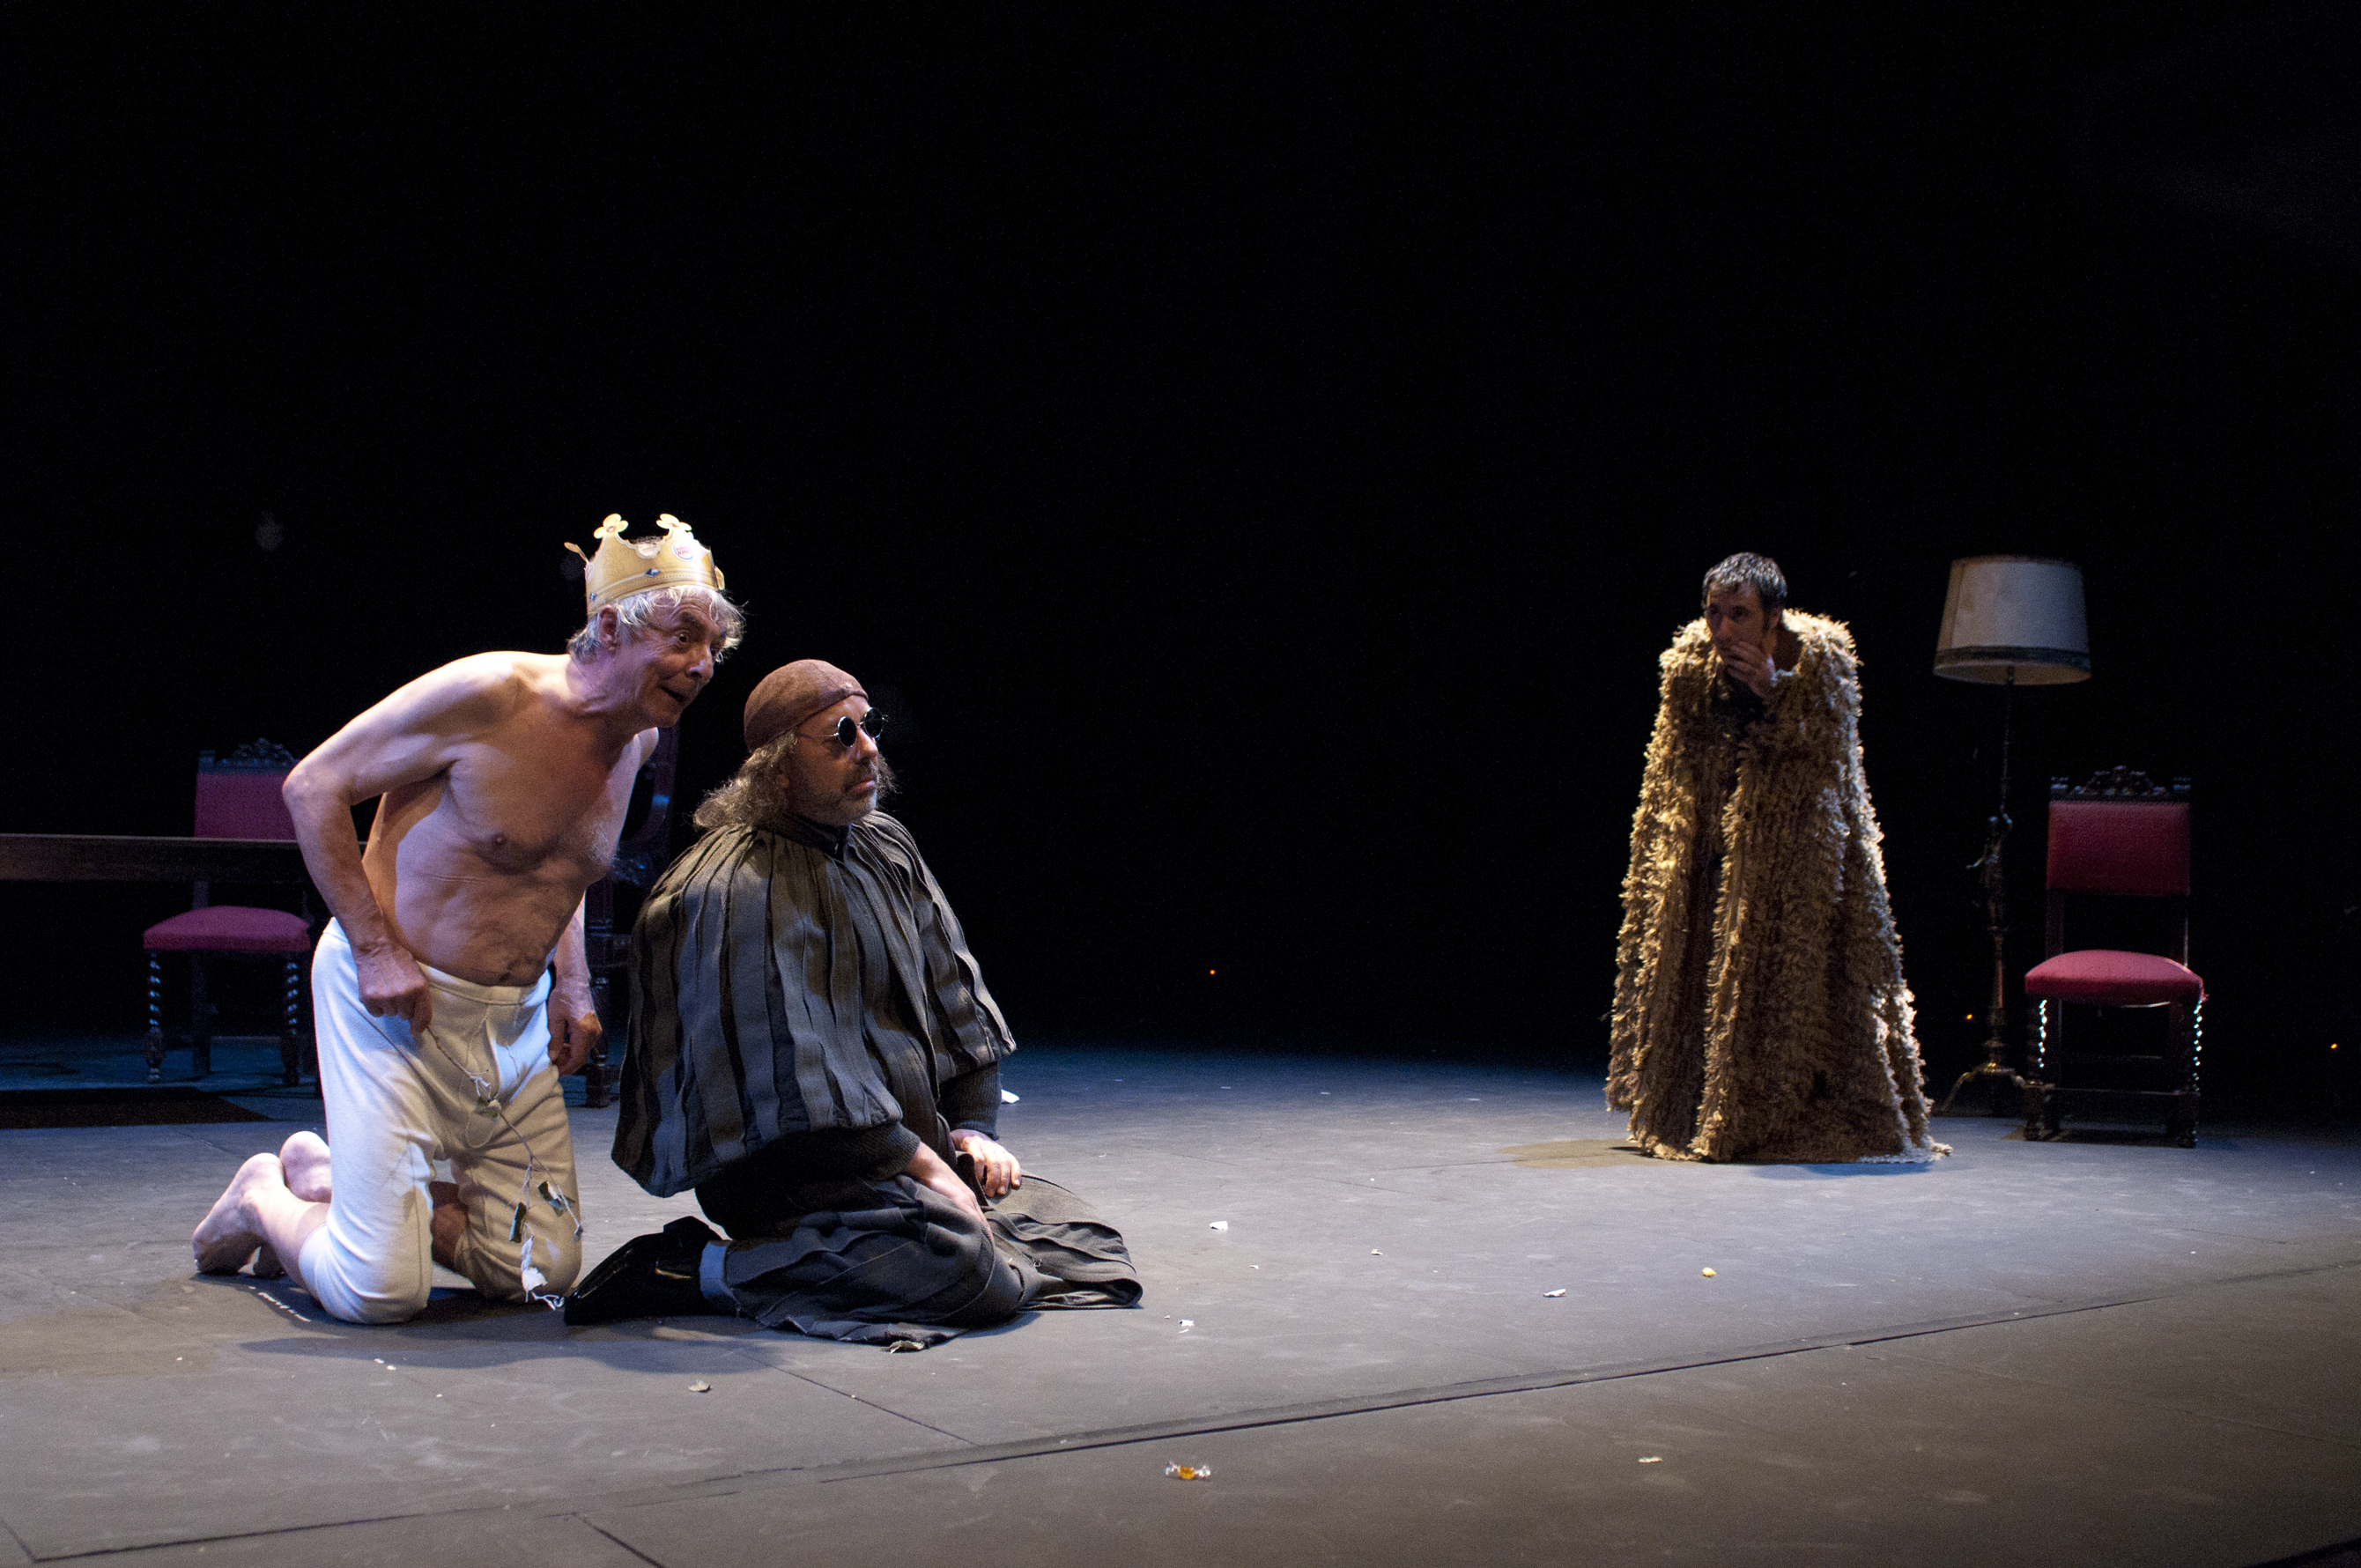 Momento de la representación. Imagen cortesía del Teatro Alhambra de Granada.